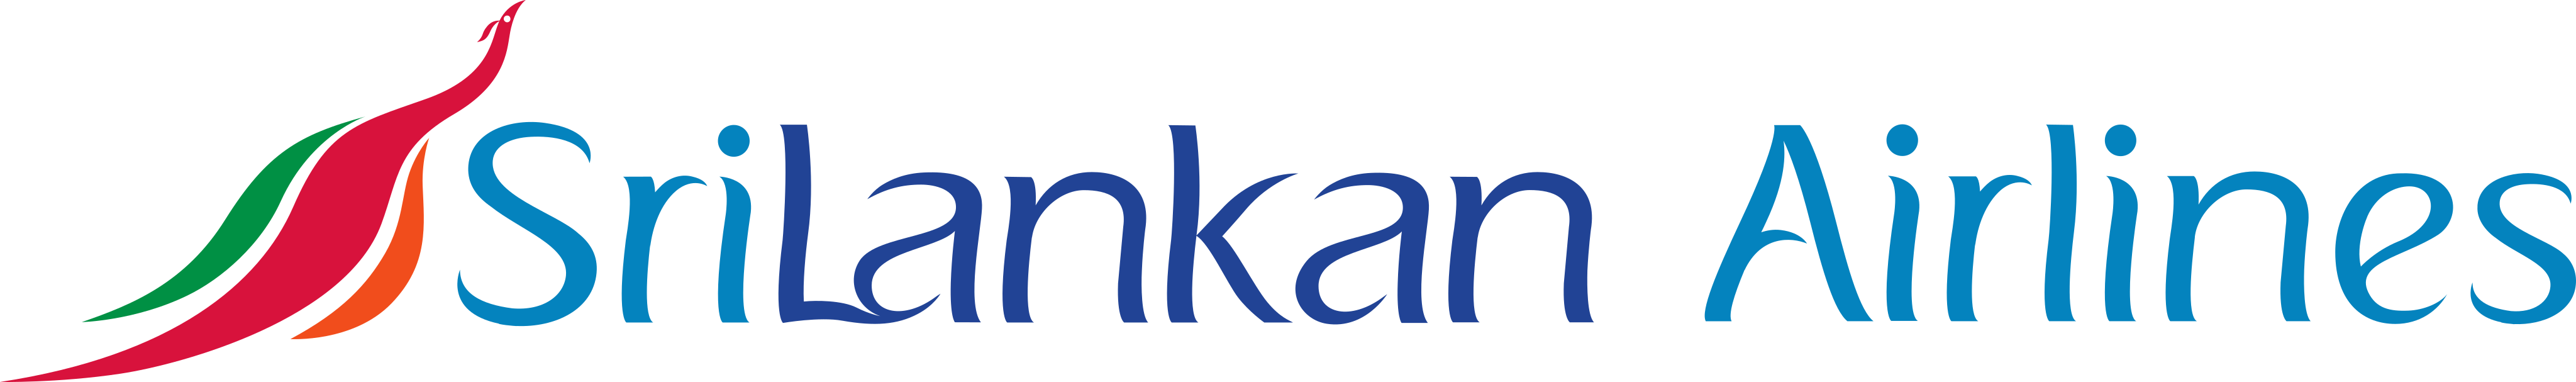 srilankan airlines logo - SriLankan Airlines Logo